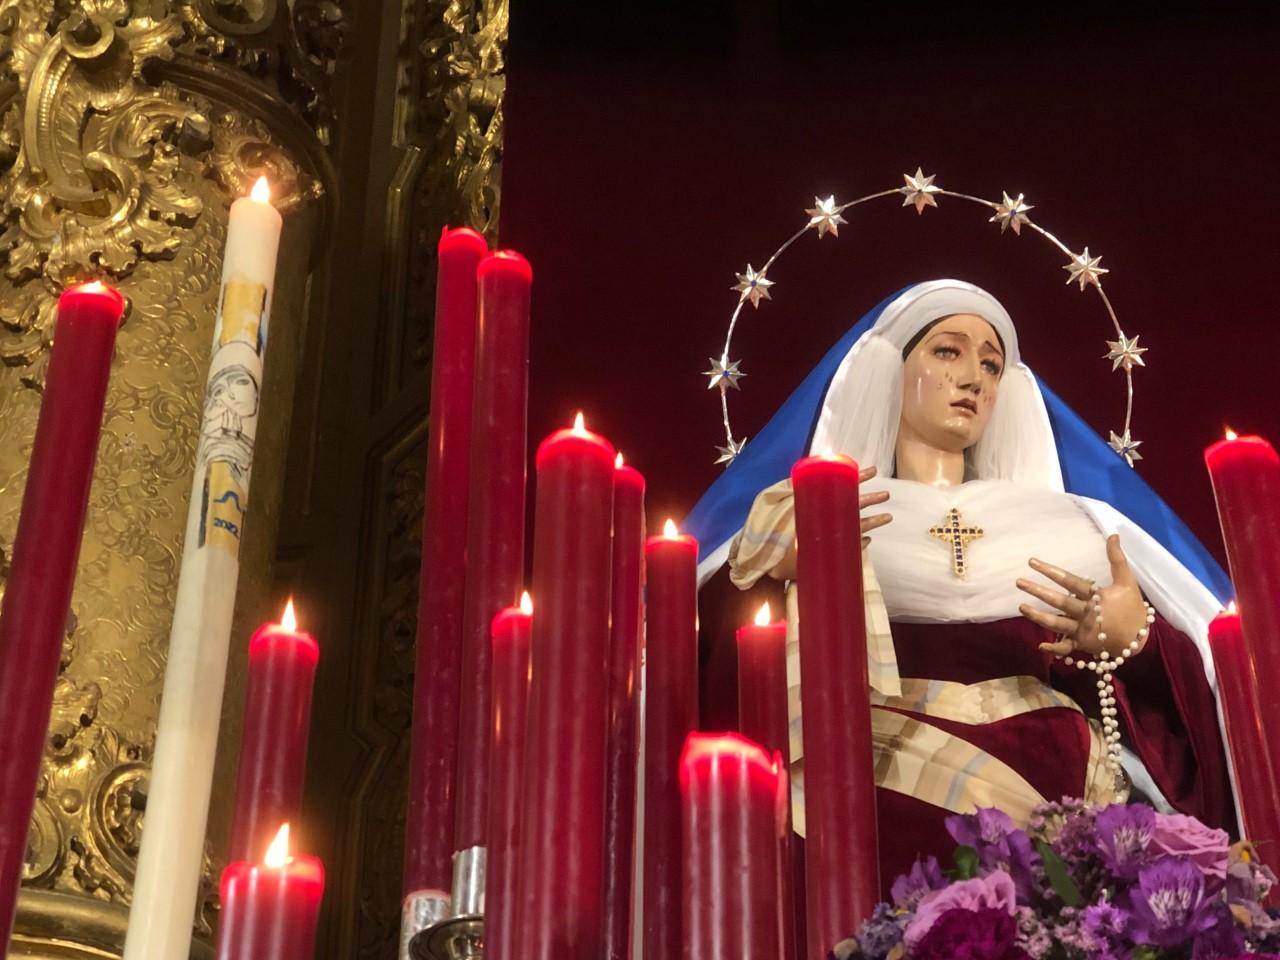 Lo que el ojo sí vio: La Virgen de Vladimir, en el altar de cultos en San Mateo